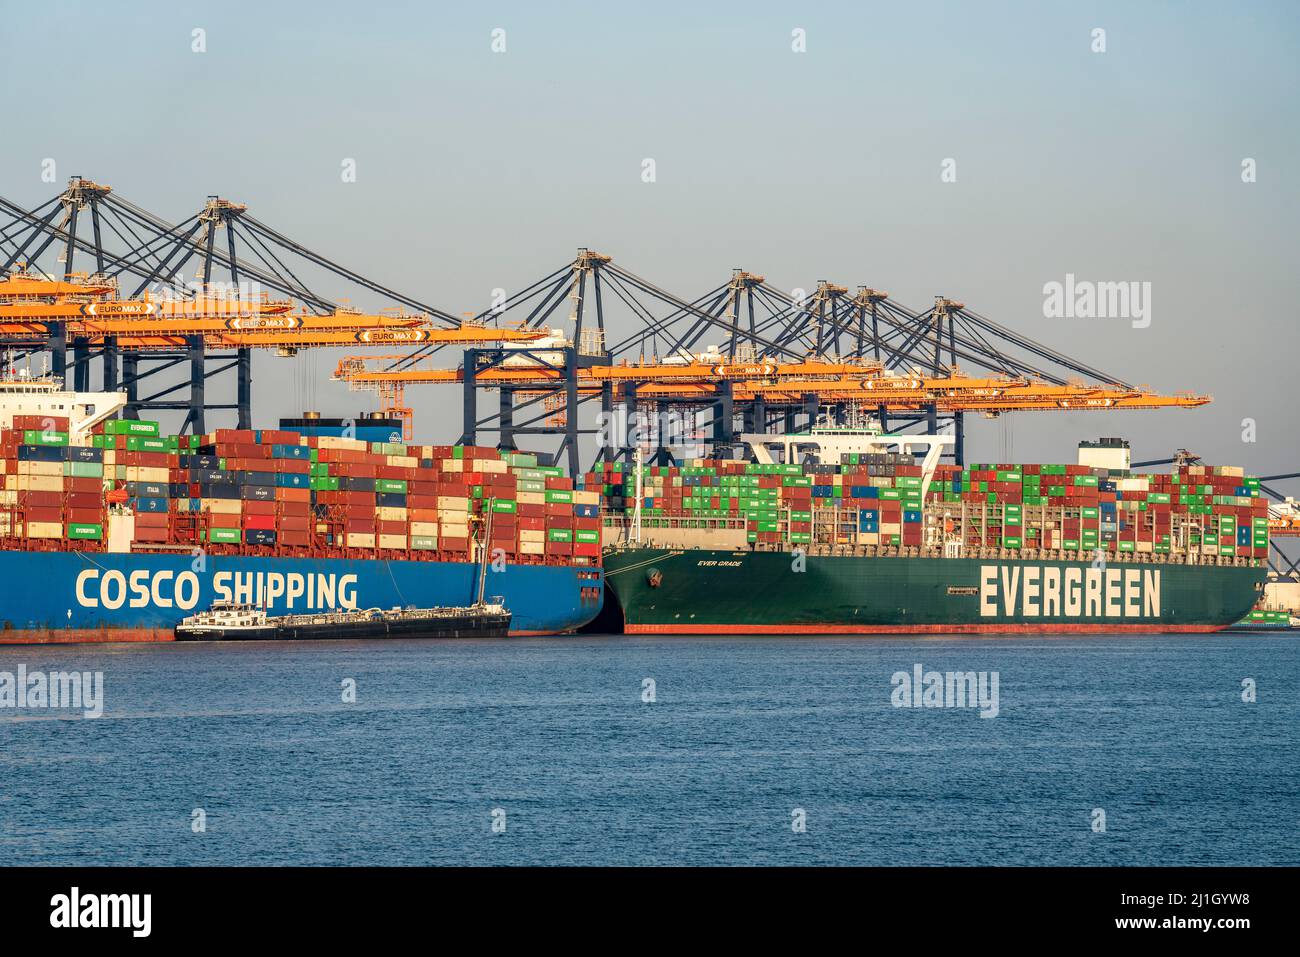 EuroOmax Container Terminal, Containerfrachter, im Seehafen Rotterdam, Niederlande, Tiefseehafen Maasvlakte 2, auf einem künstlich geschaffenen lan Stockfoto